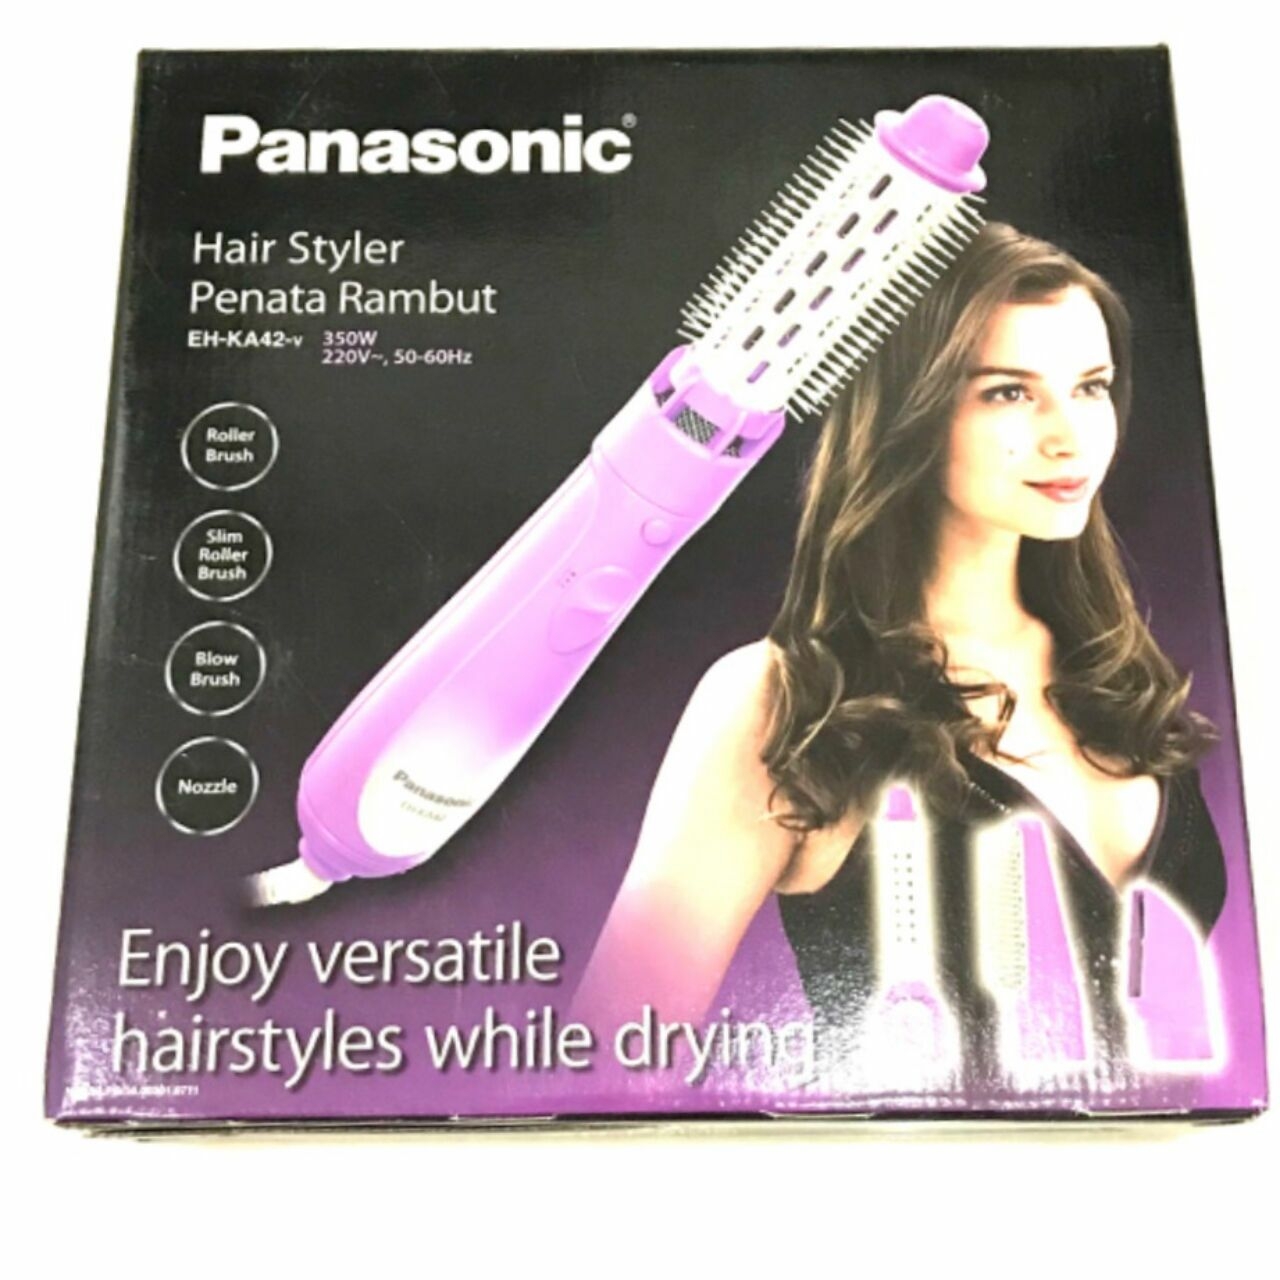 Panasonic Purple Hair Care